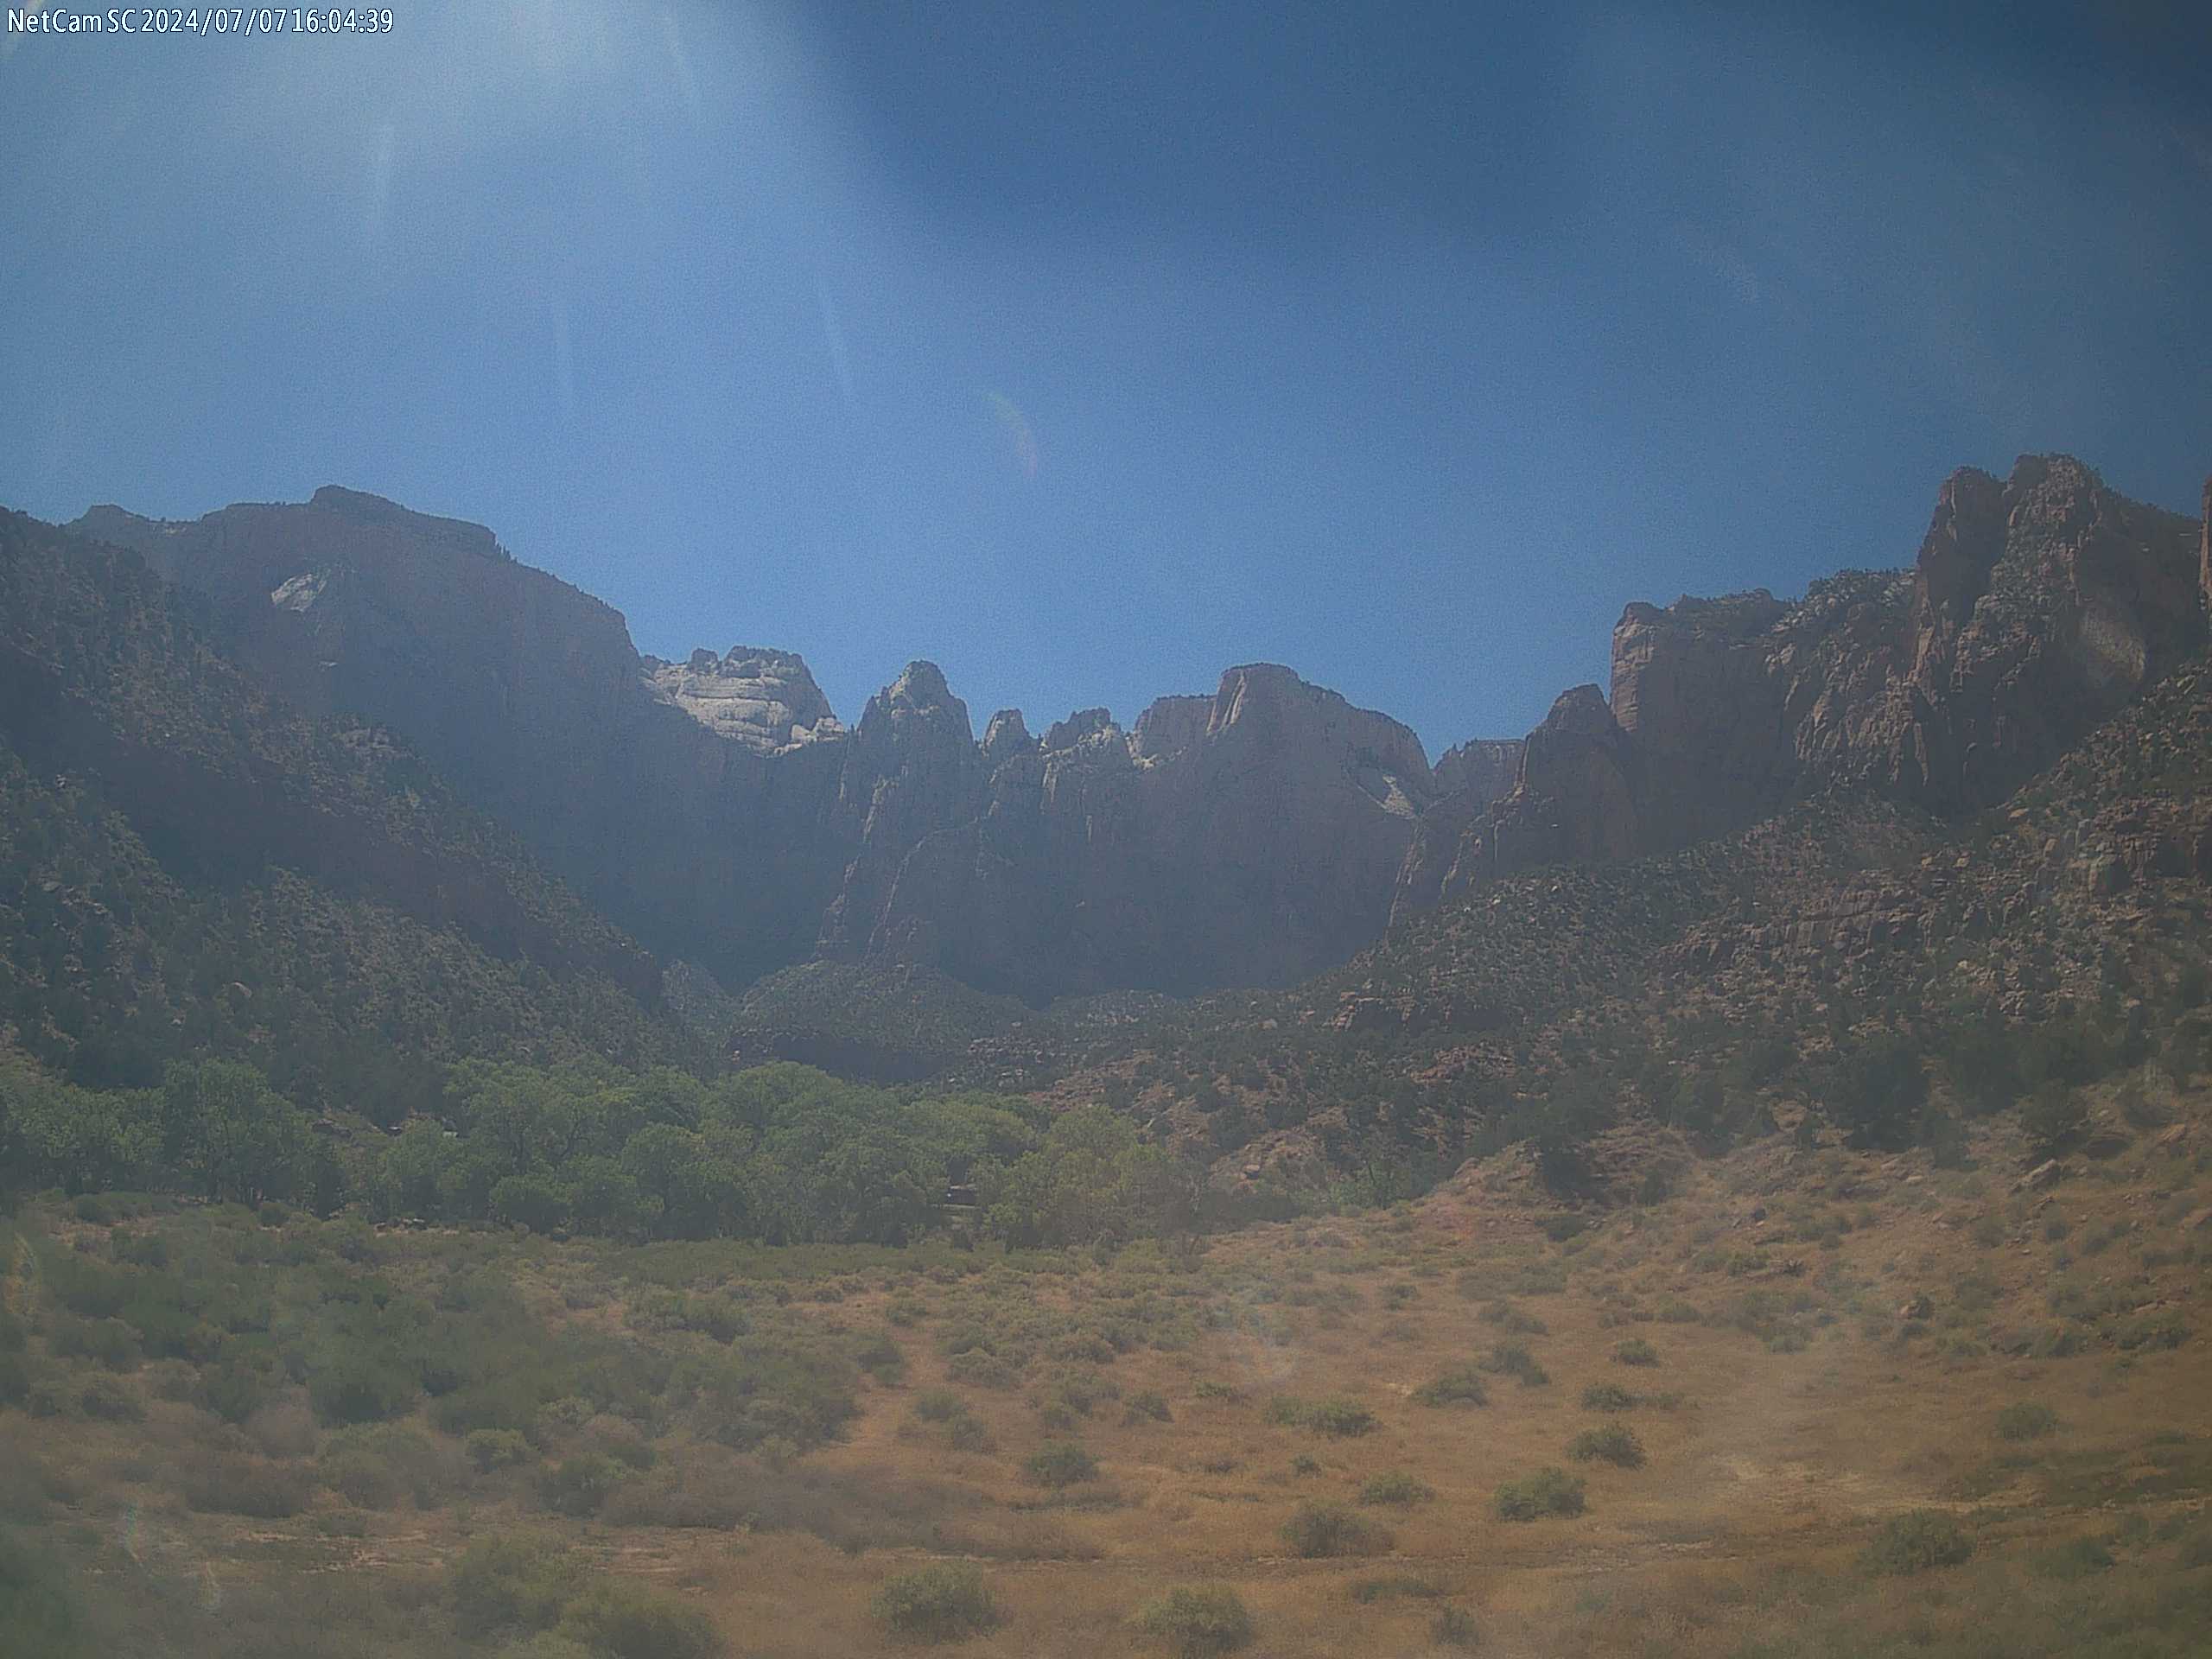 Zion National Park Webcam 12